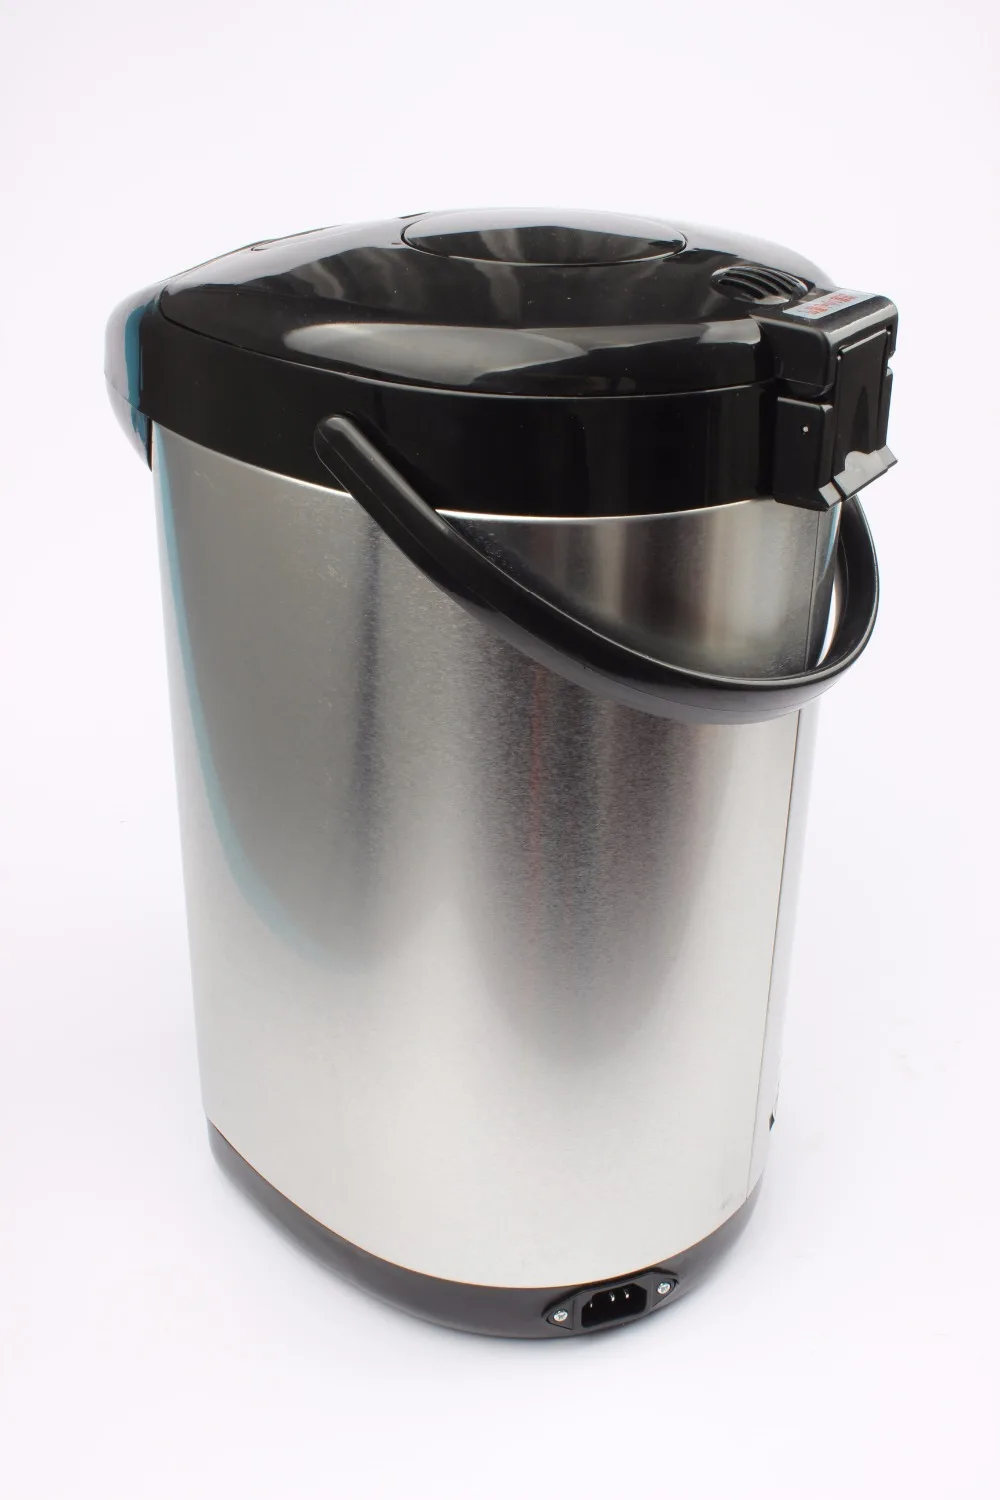 CUKYI Электрический Подвесные горшки термос 5L воды чайник высокого качества большой ёмкость контроль температуры автоматический сохранение